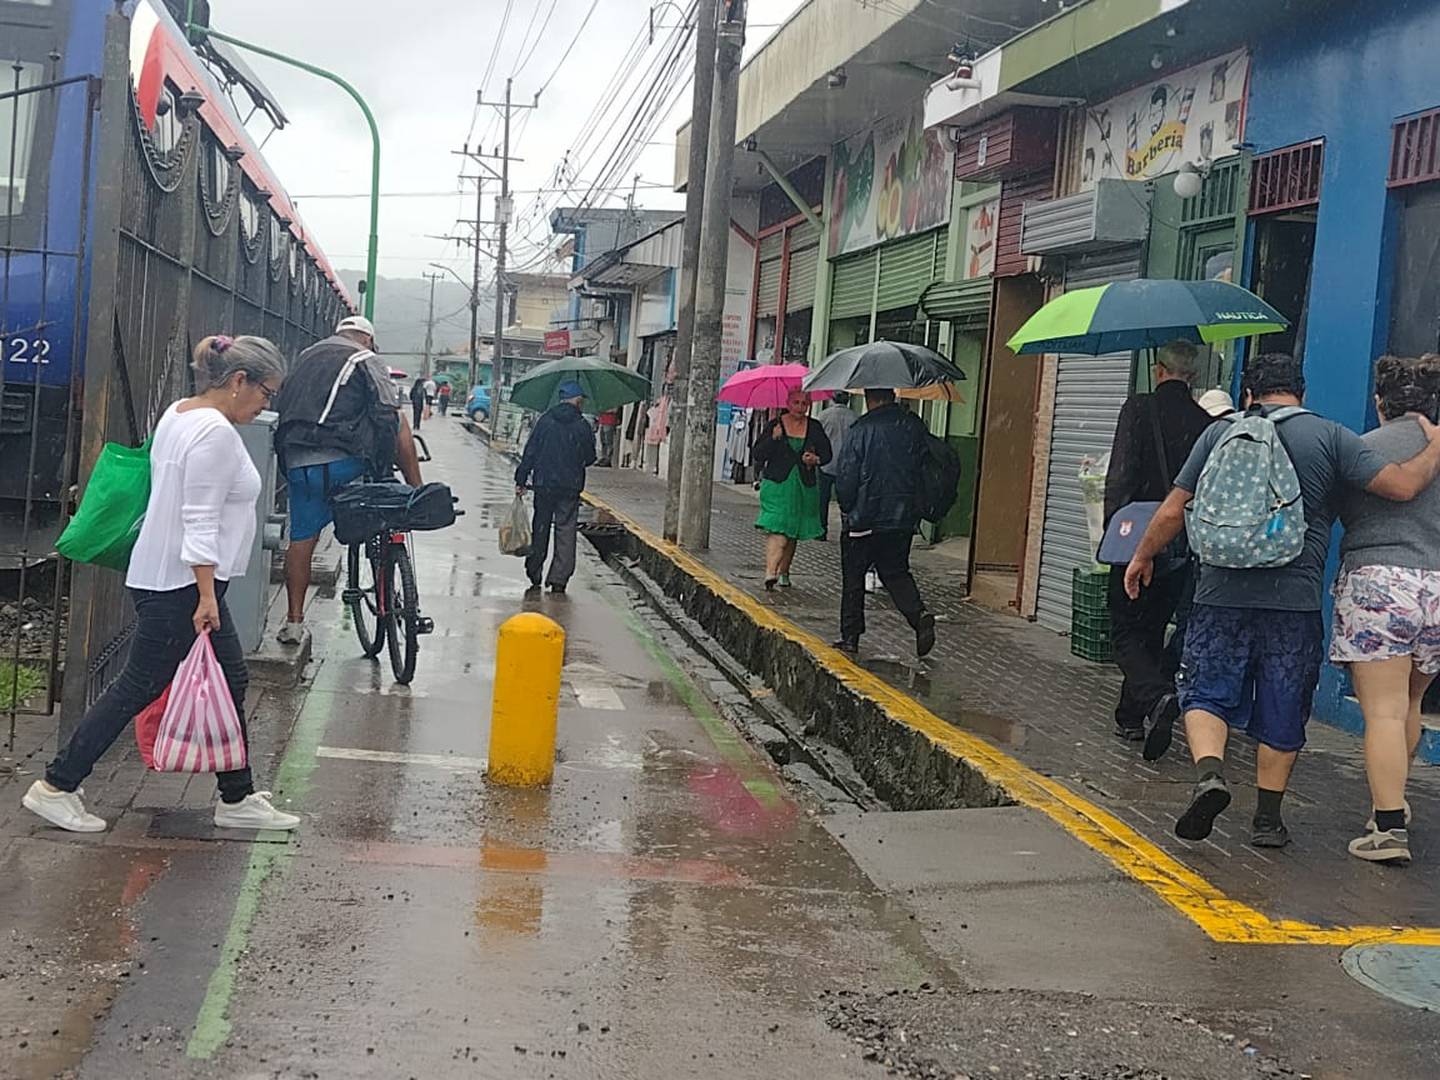 Lluvias intermitentes y cielo nublado prevalecieron este 15 de junio en la mayoría del territorio. En Cartago muchos acudieron a sombrillas y paraguas. Foto: Keyna Calderón.